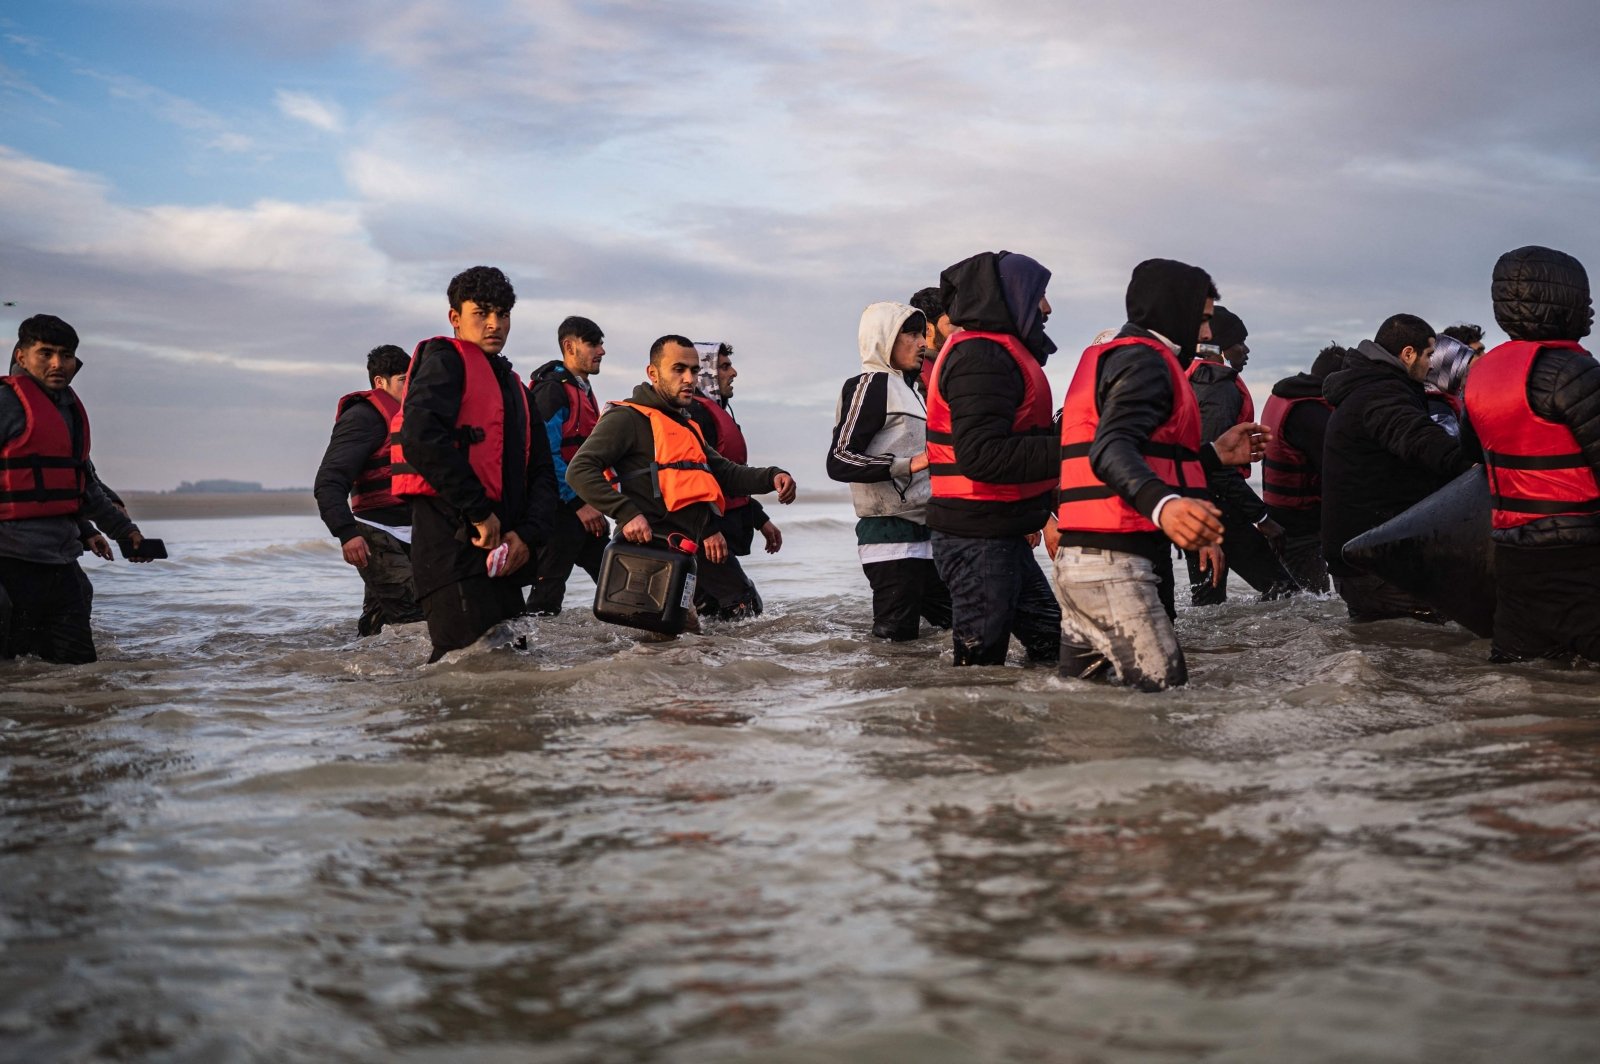 L’Italia ha annunciato regole severe per i soccorritori di migranti in mare